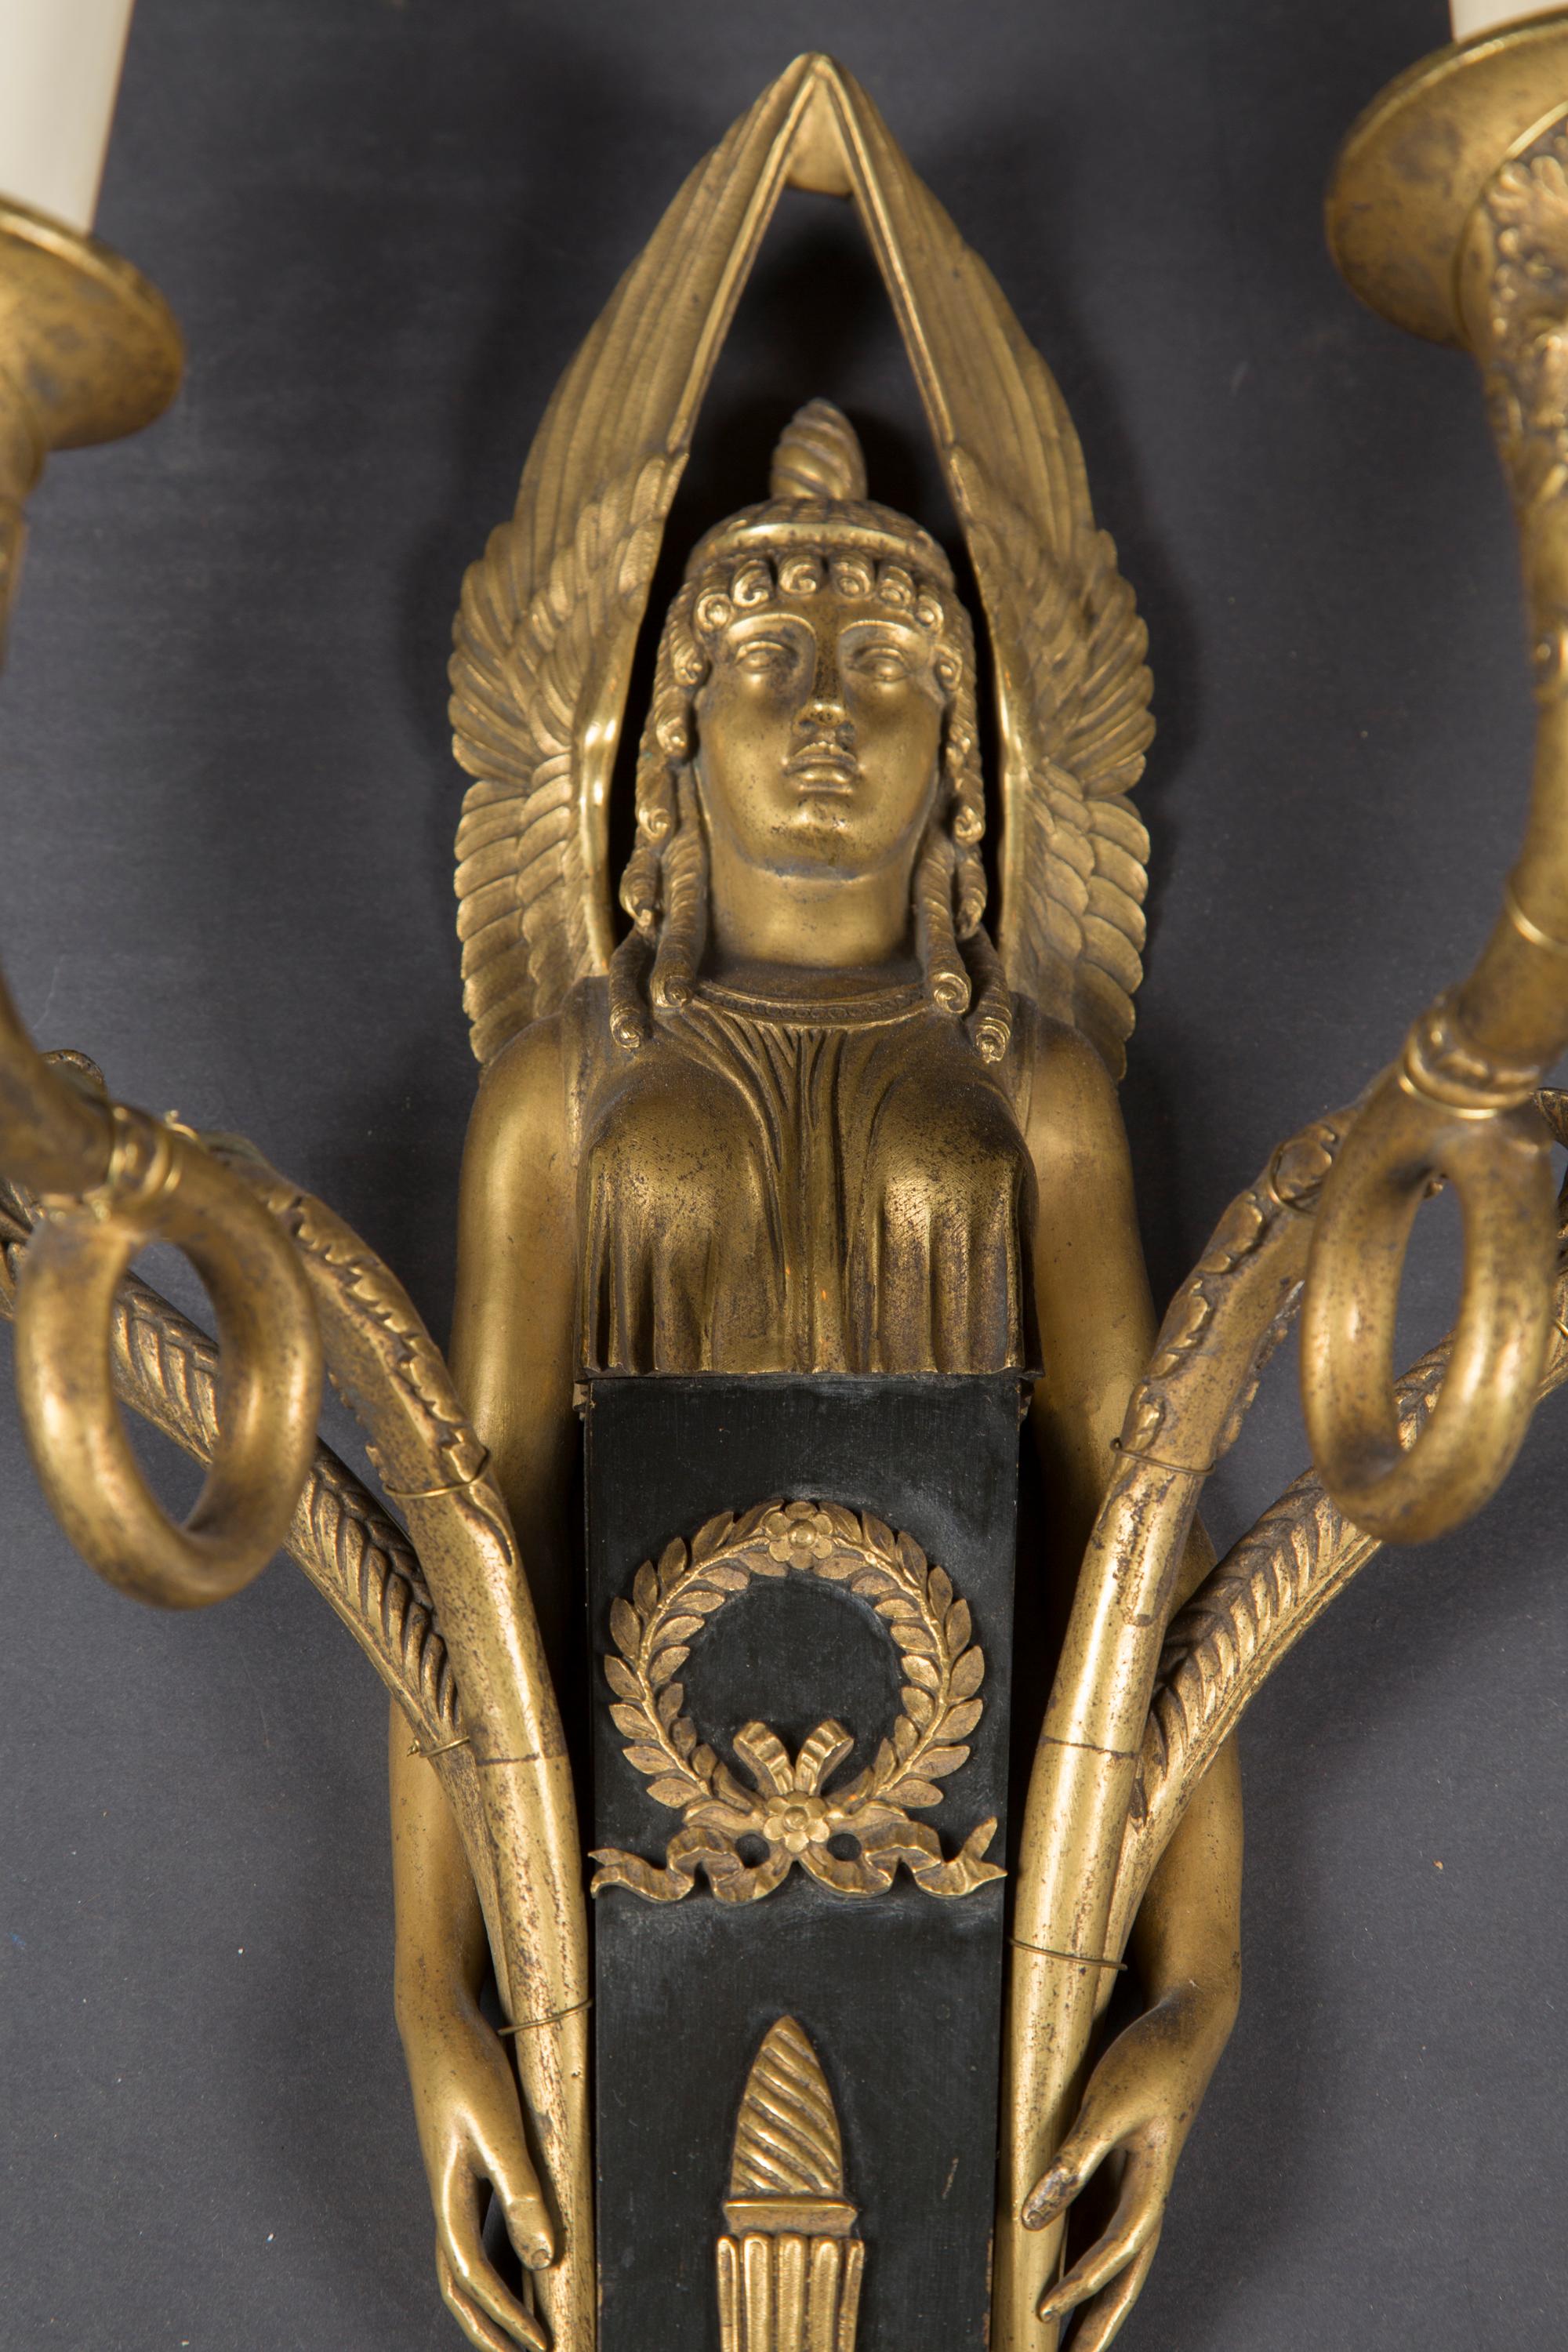 Dieses prächtige Paar Empire-Leuchter aus dem 19. Jahrhundert ist aus Bronze und Zinn gefertigt und zeigt fantastisch stilisierte ägyptische Figuren auf jeder Rückwand. Beachten Sie die Details in den Flügeln, den Stoff und die Hände mit den auf den